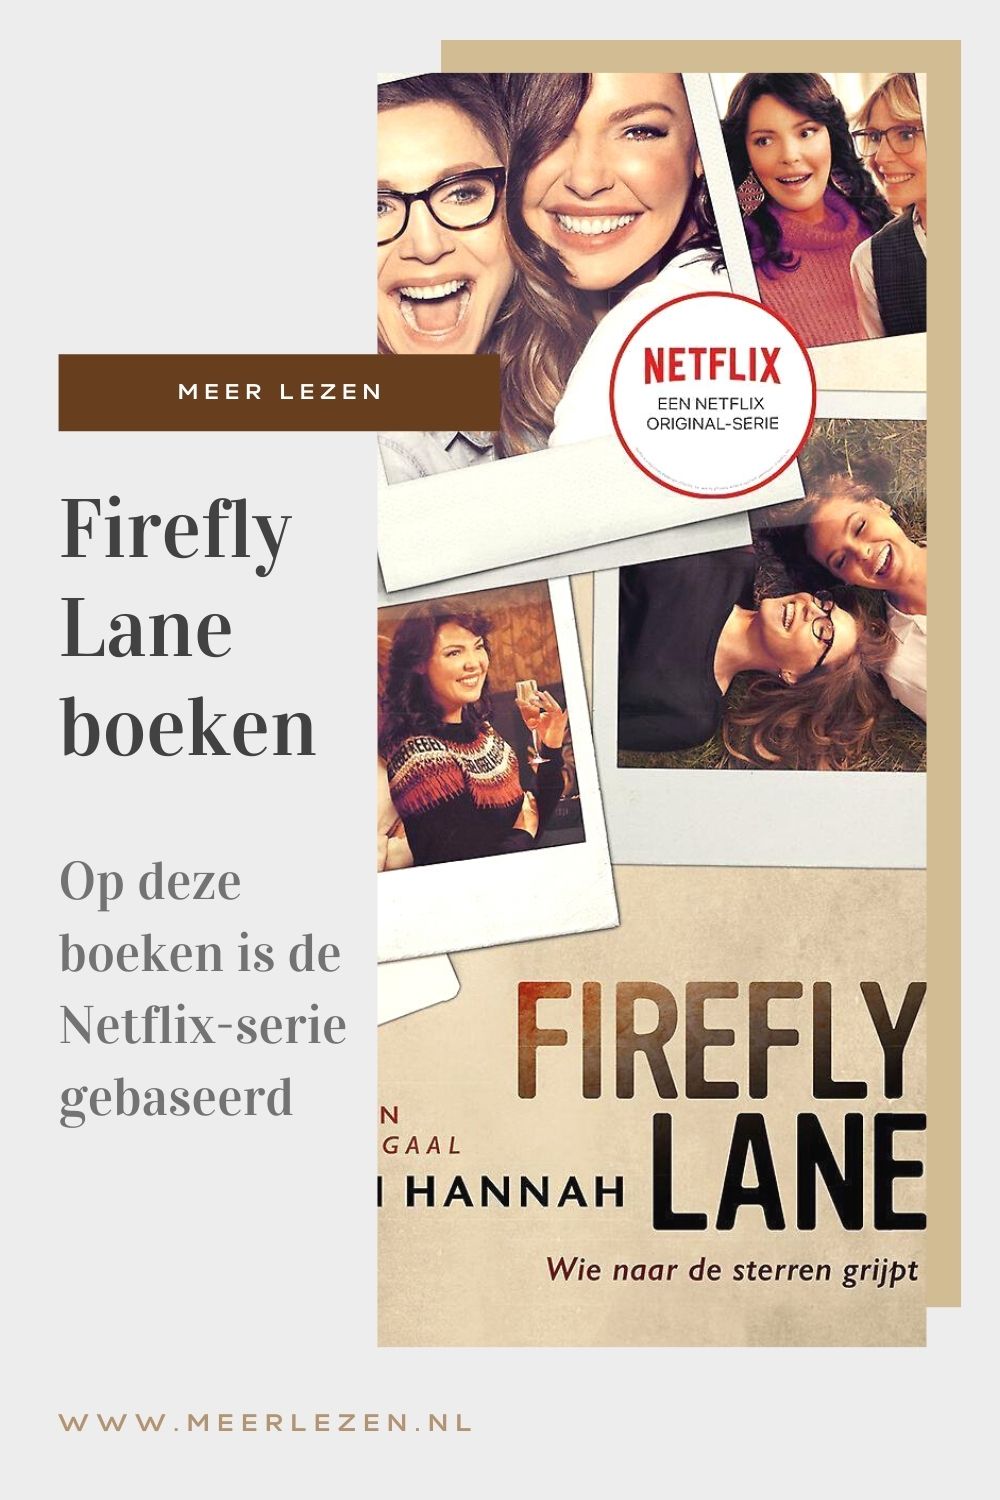 Firefly Lane boeken: hier is de Netflix-hit op gebaseerd